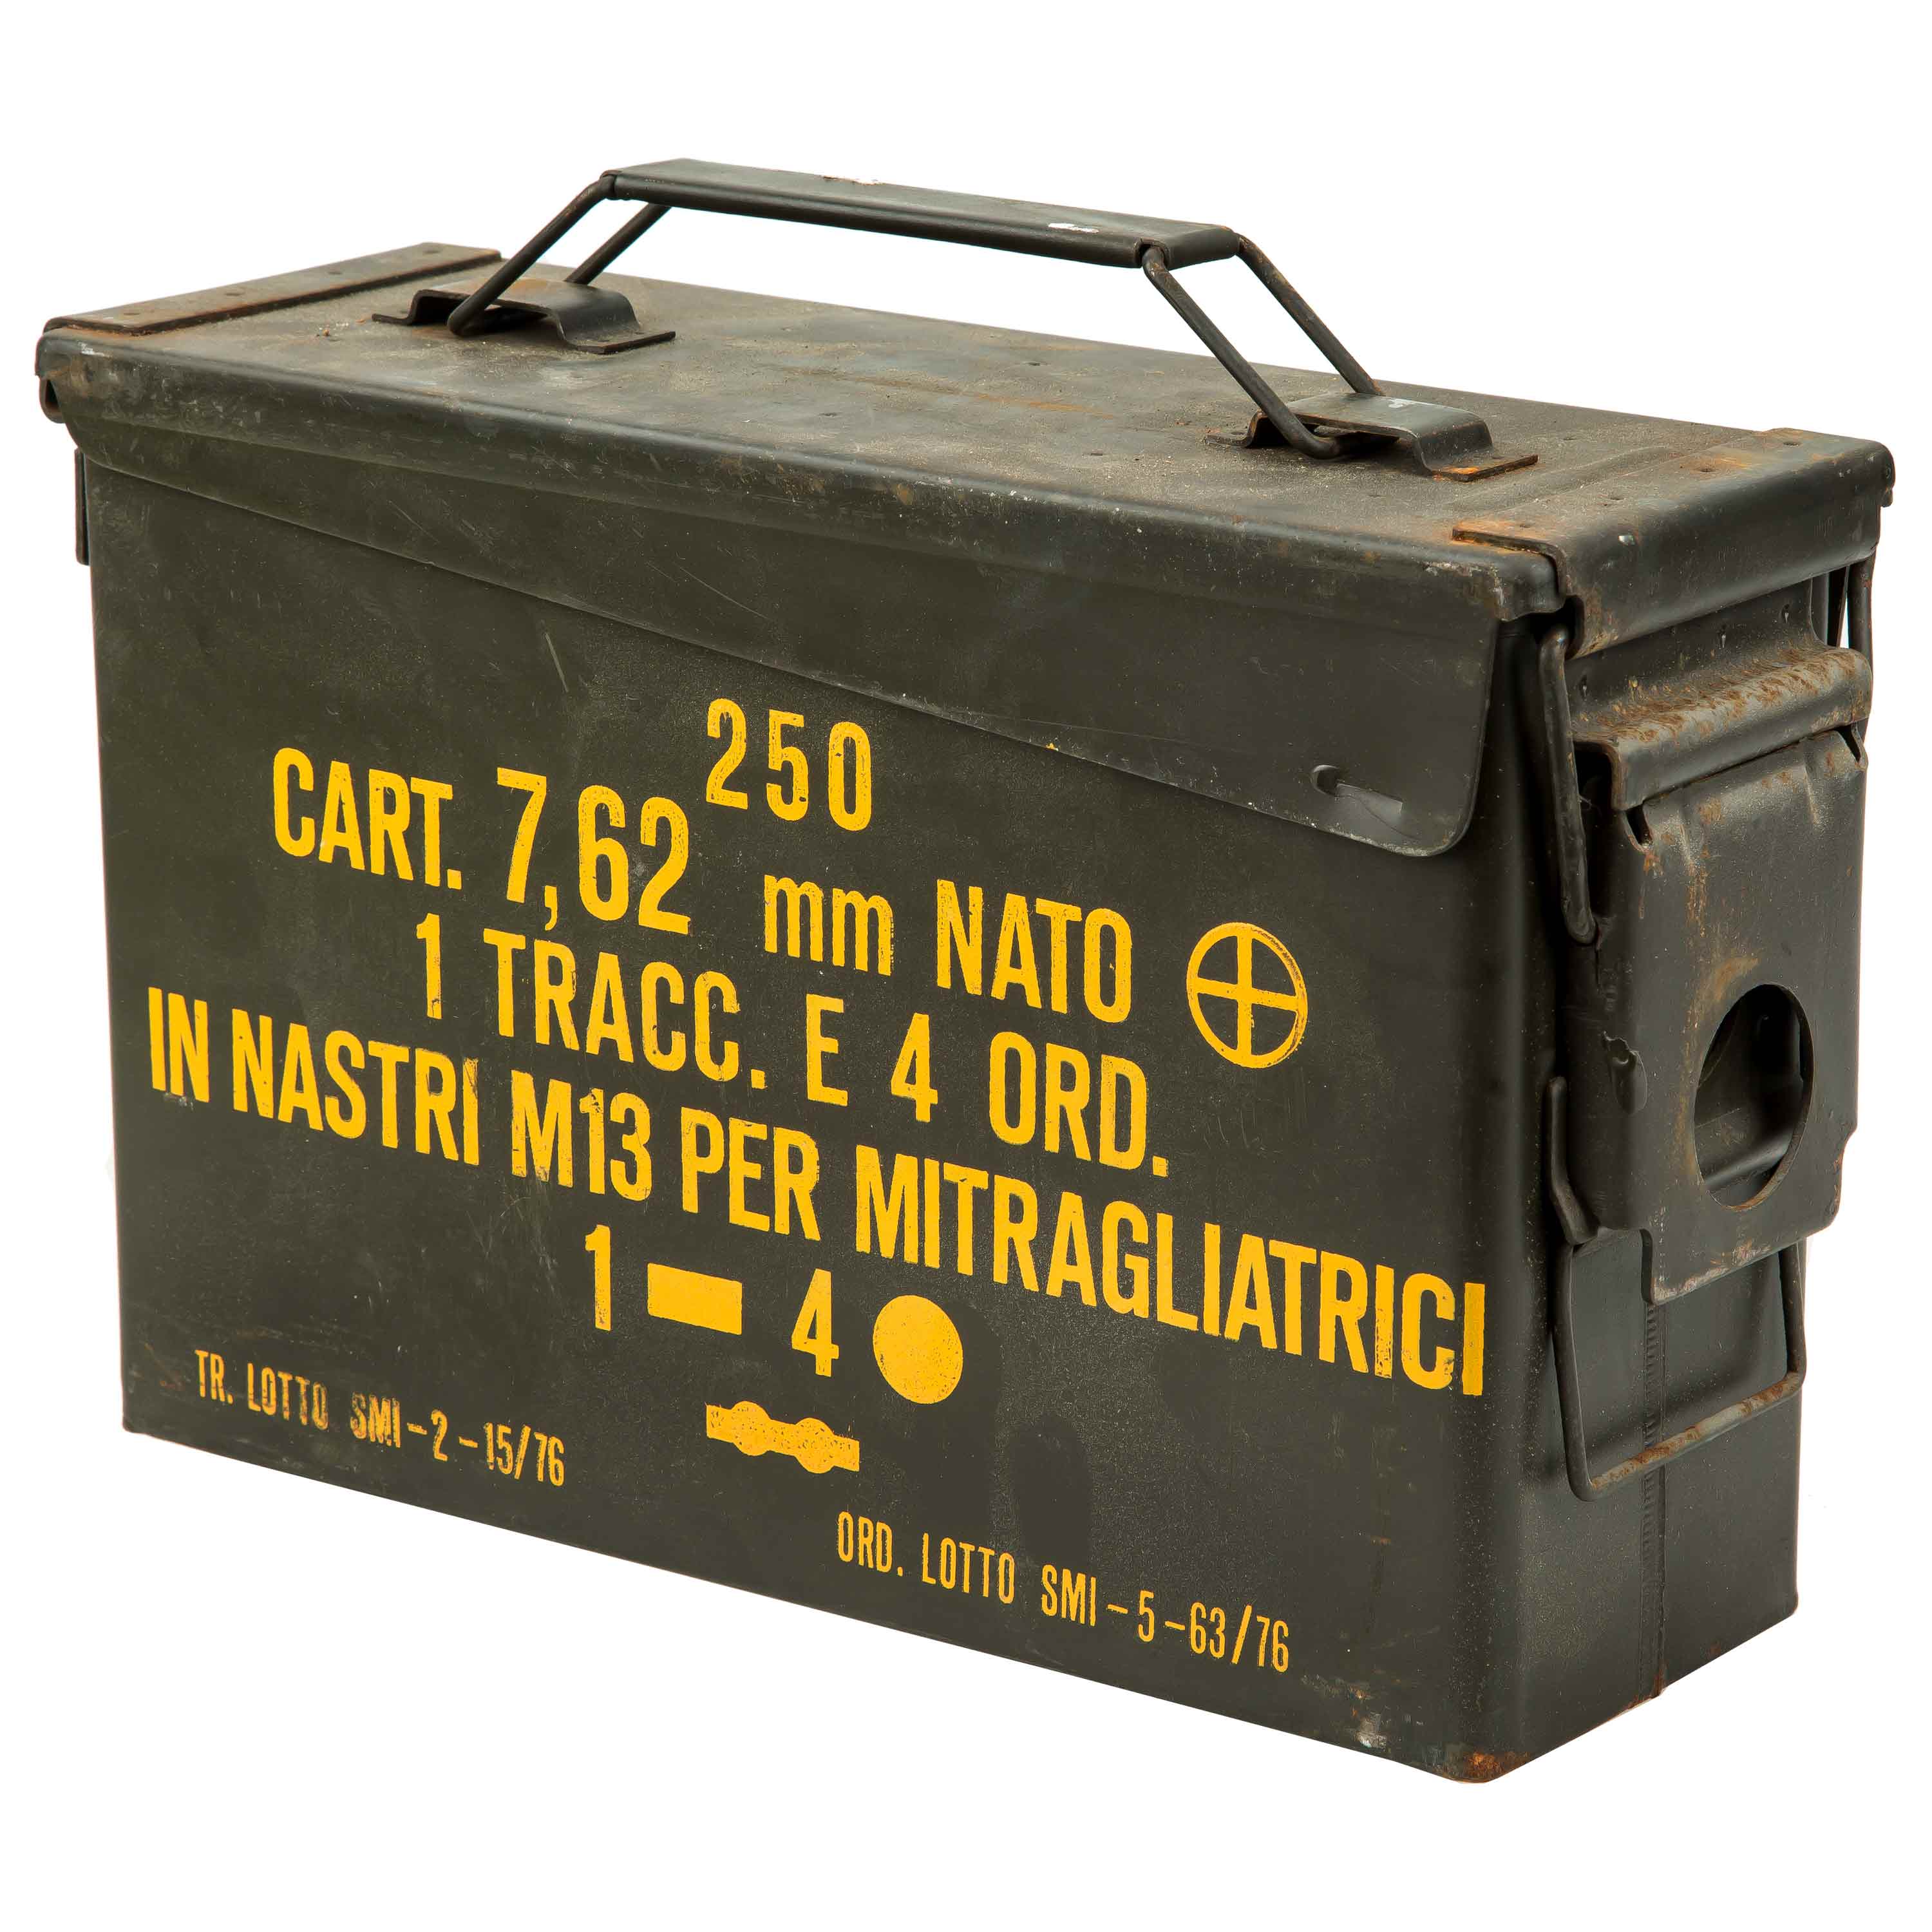 US Scatola Munizioni Cal 30 MM M19A1 Metallo Cassa Cassetta Trasporto Nuovo 